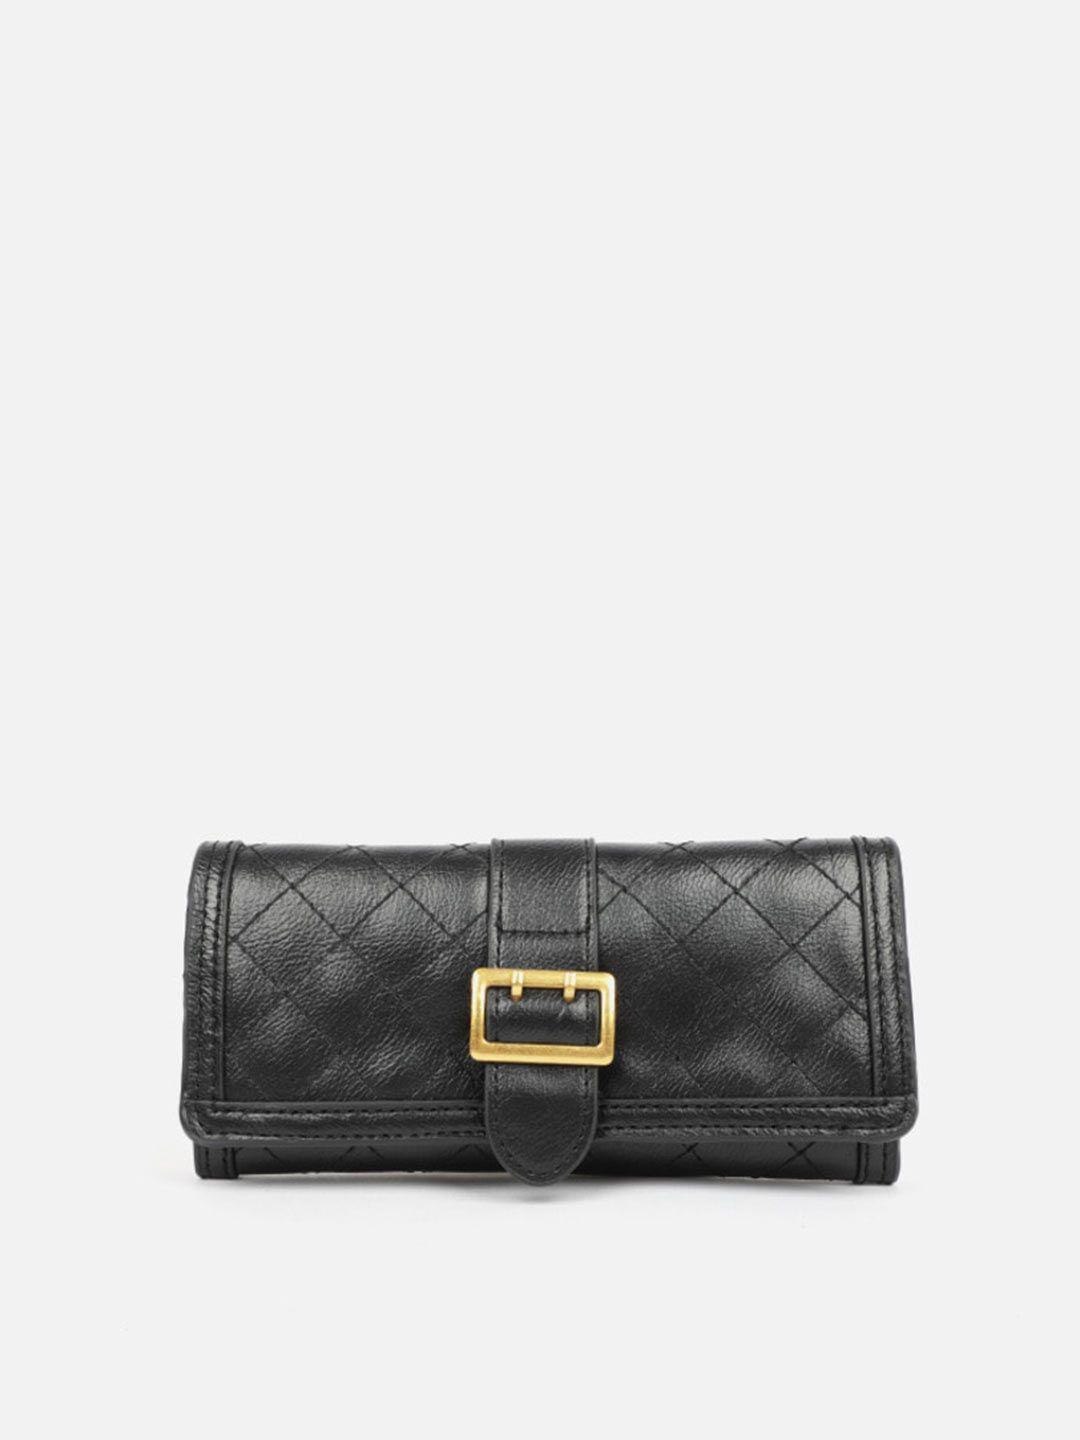 carlton-london-textured-purse-clutch